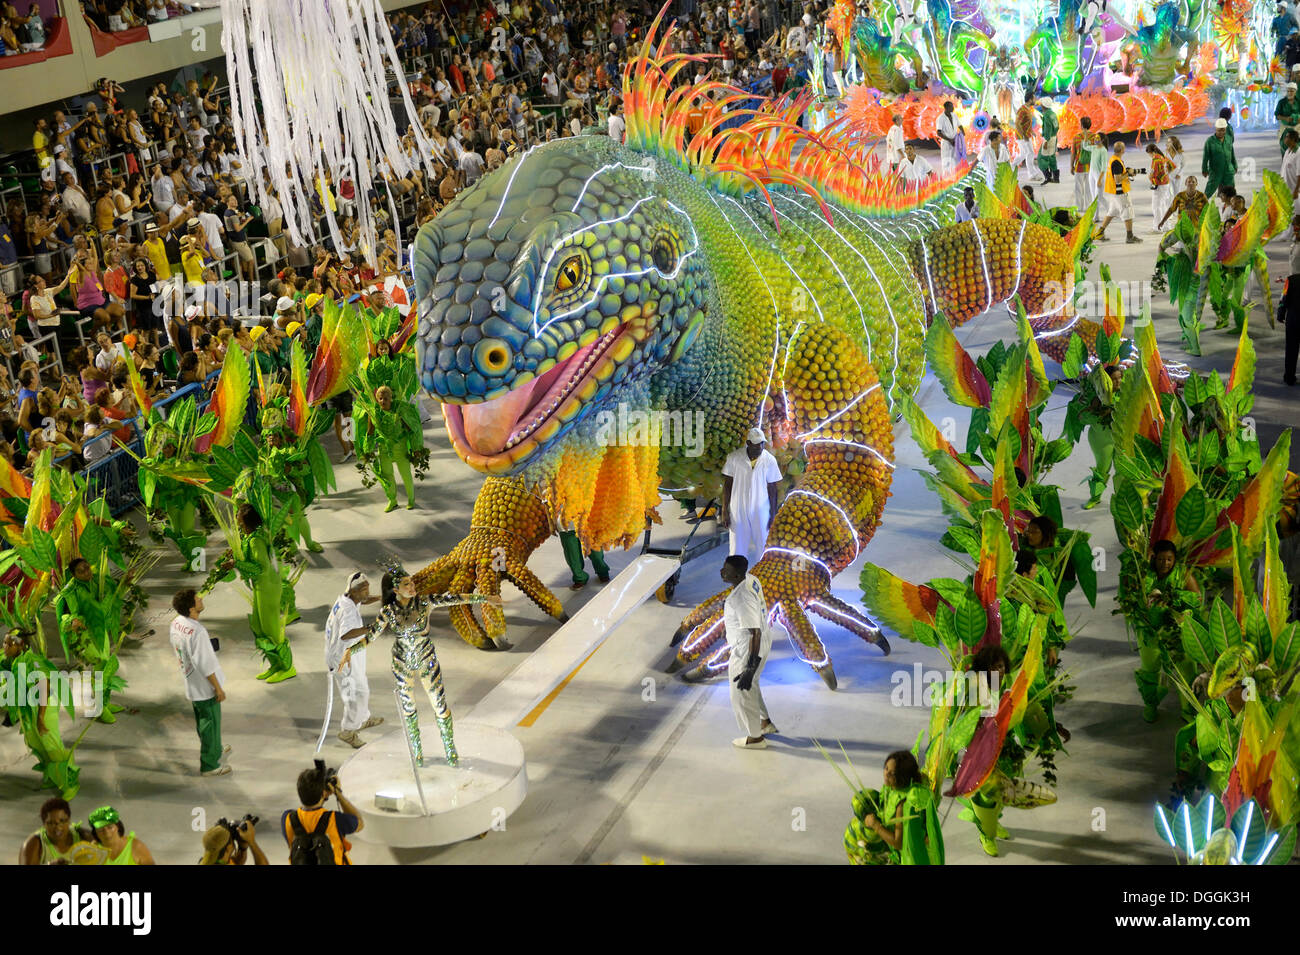 Iguane vert géant, défilé de l'Academicos do Rio Grande école de samba pendant le Carnaval de Rio de Janeiro en 2013 Banque D'Images